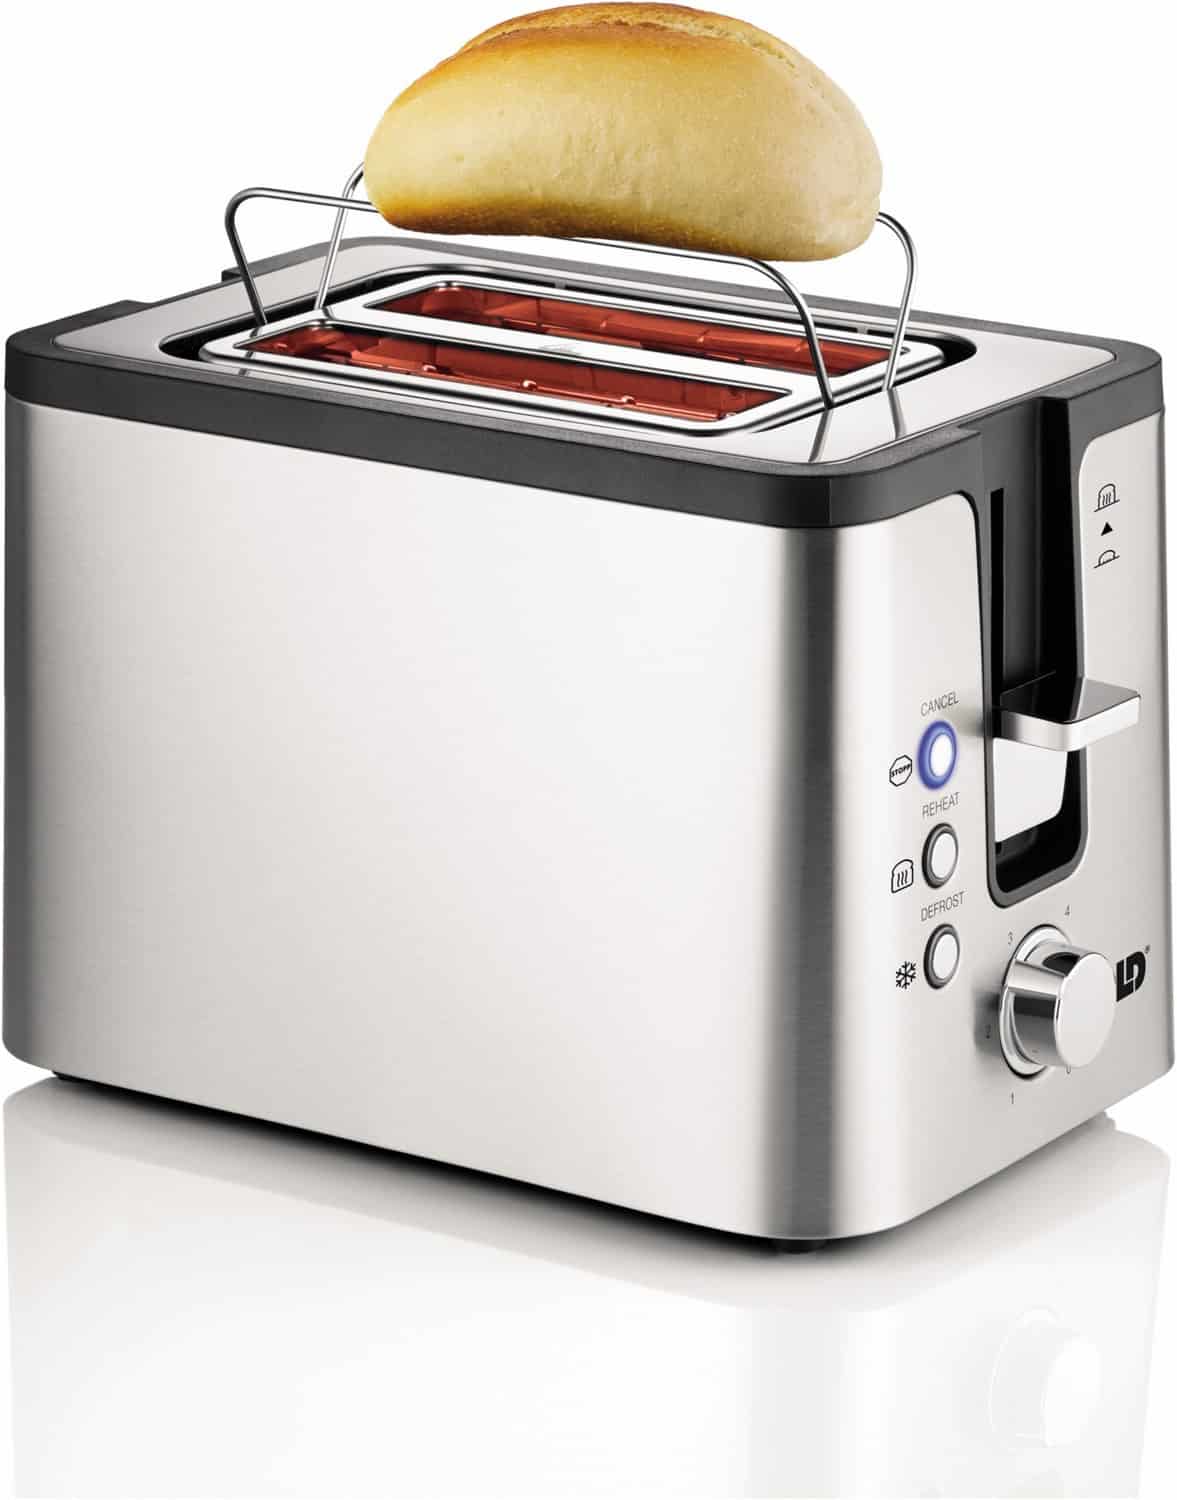 Unold 38215 Toaster 2er Kompakt edelstahl/schwarz